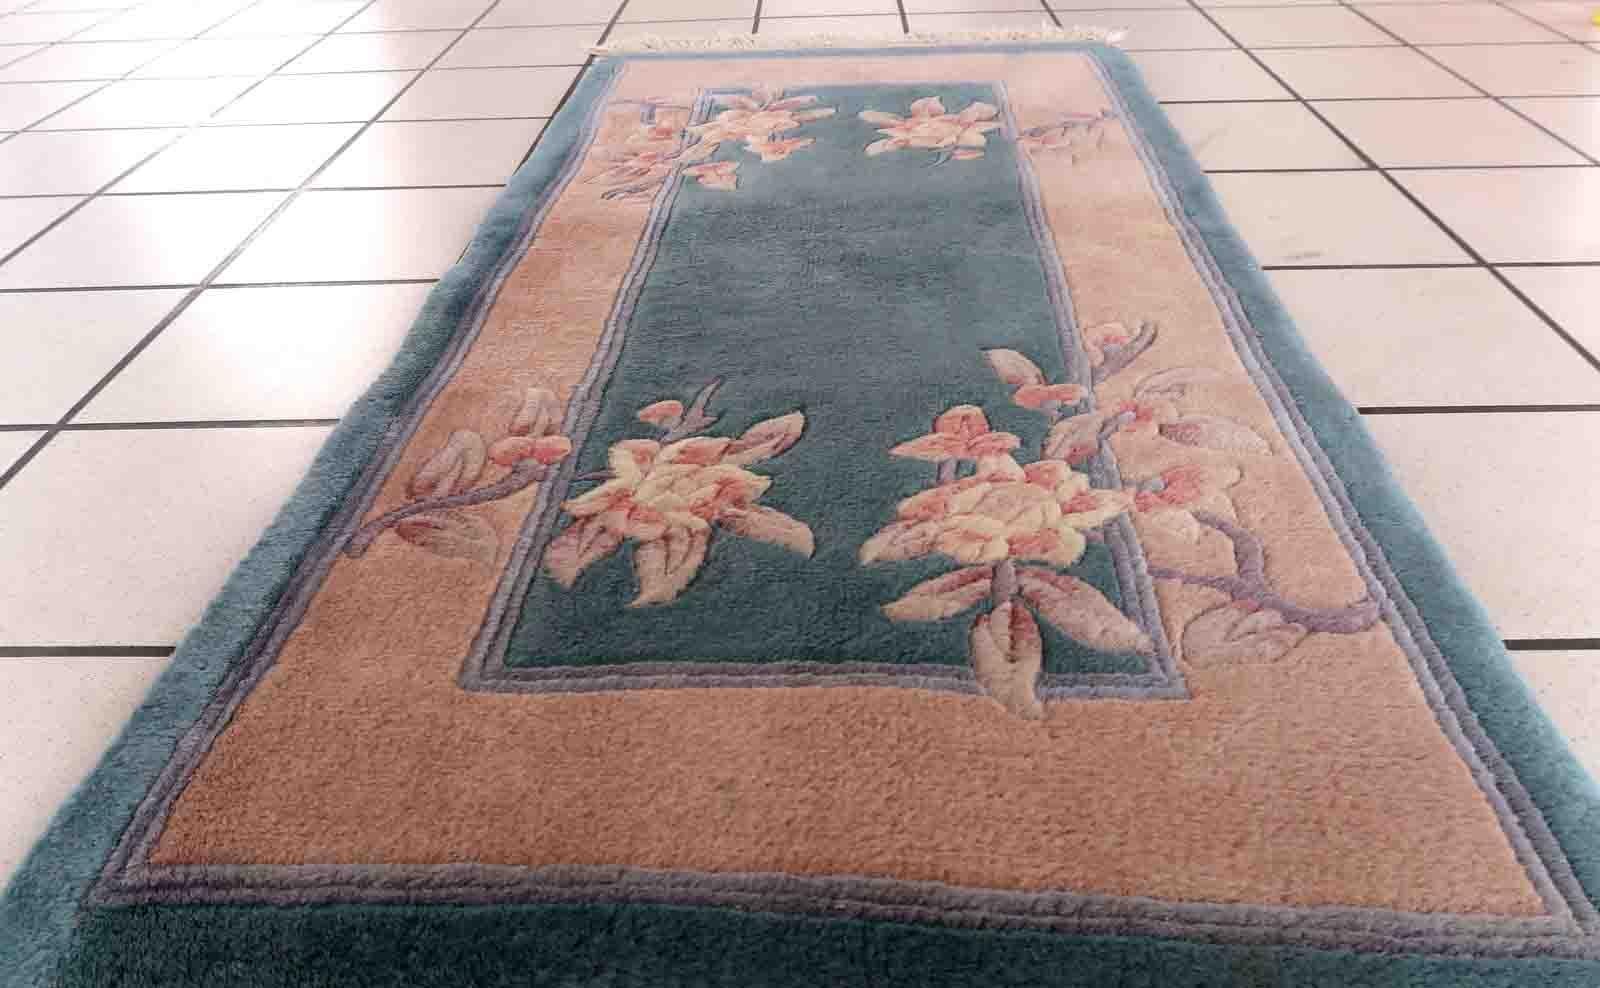 Handgefertigter chinesischer Vintage-Teppich im Art-Déco-Stil, Farbe meergrün. Der Teppich stammt aus dem Ende des 20. Jahrhunderts und ist in gutem Originalzustand.

-Zustand: original gut,

-Umgebung: 1970er Jahre,

-Größe: 2' x 3.9' (61cm x